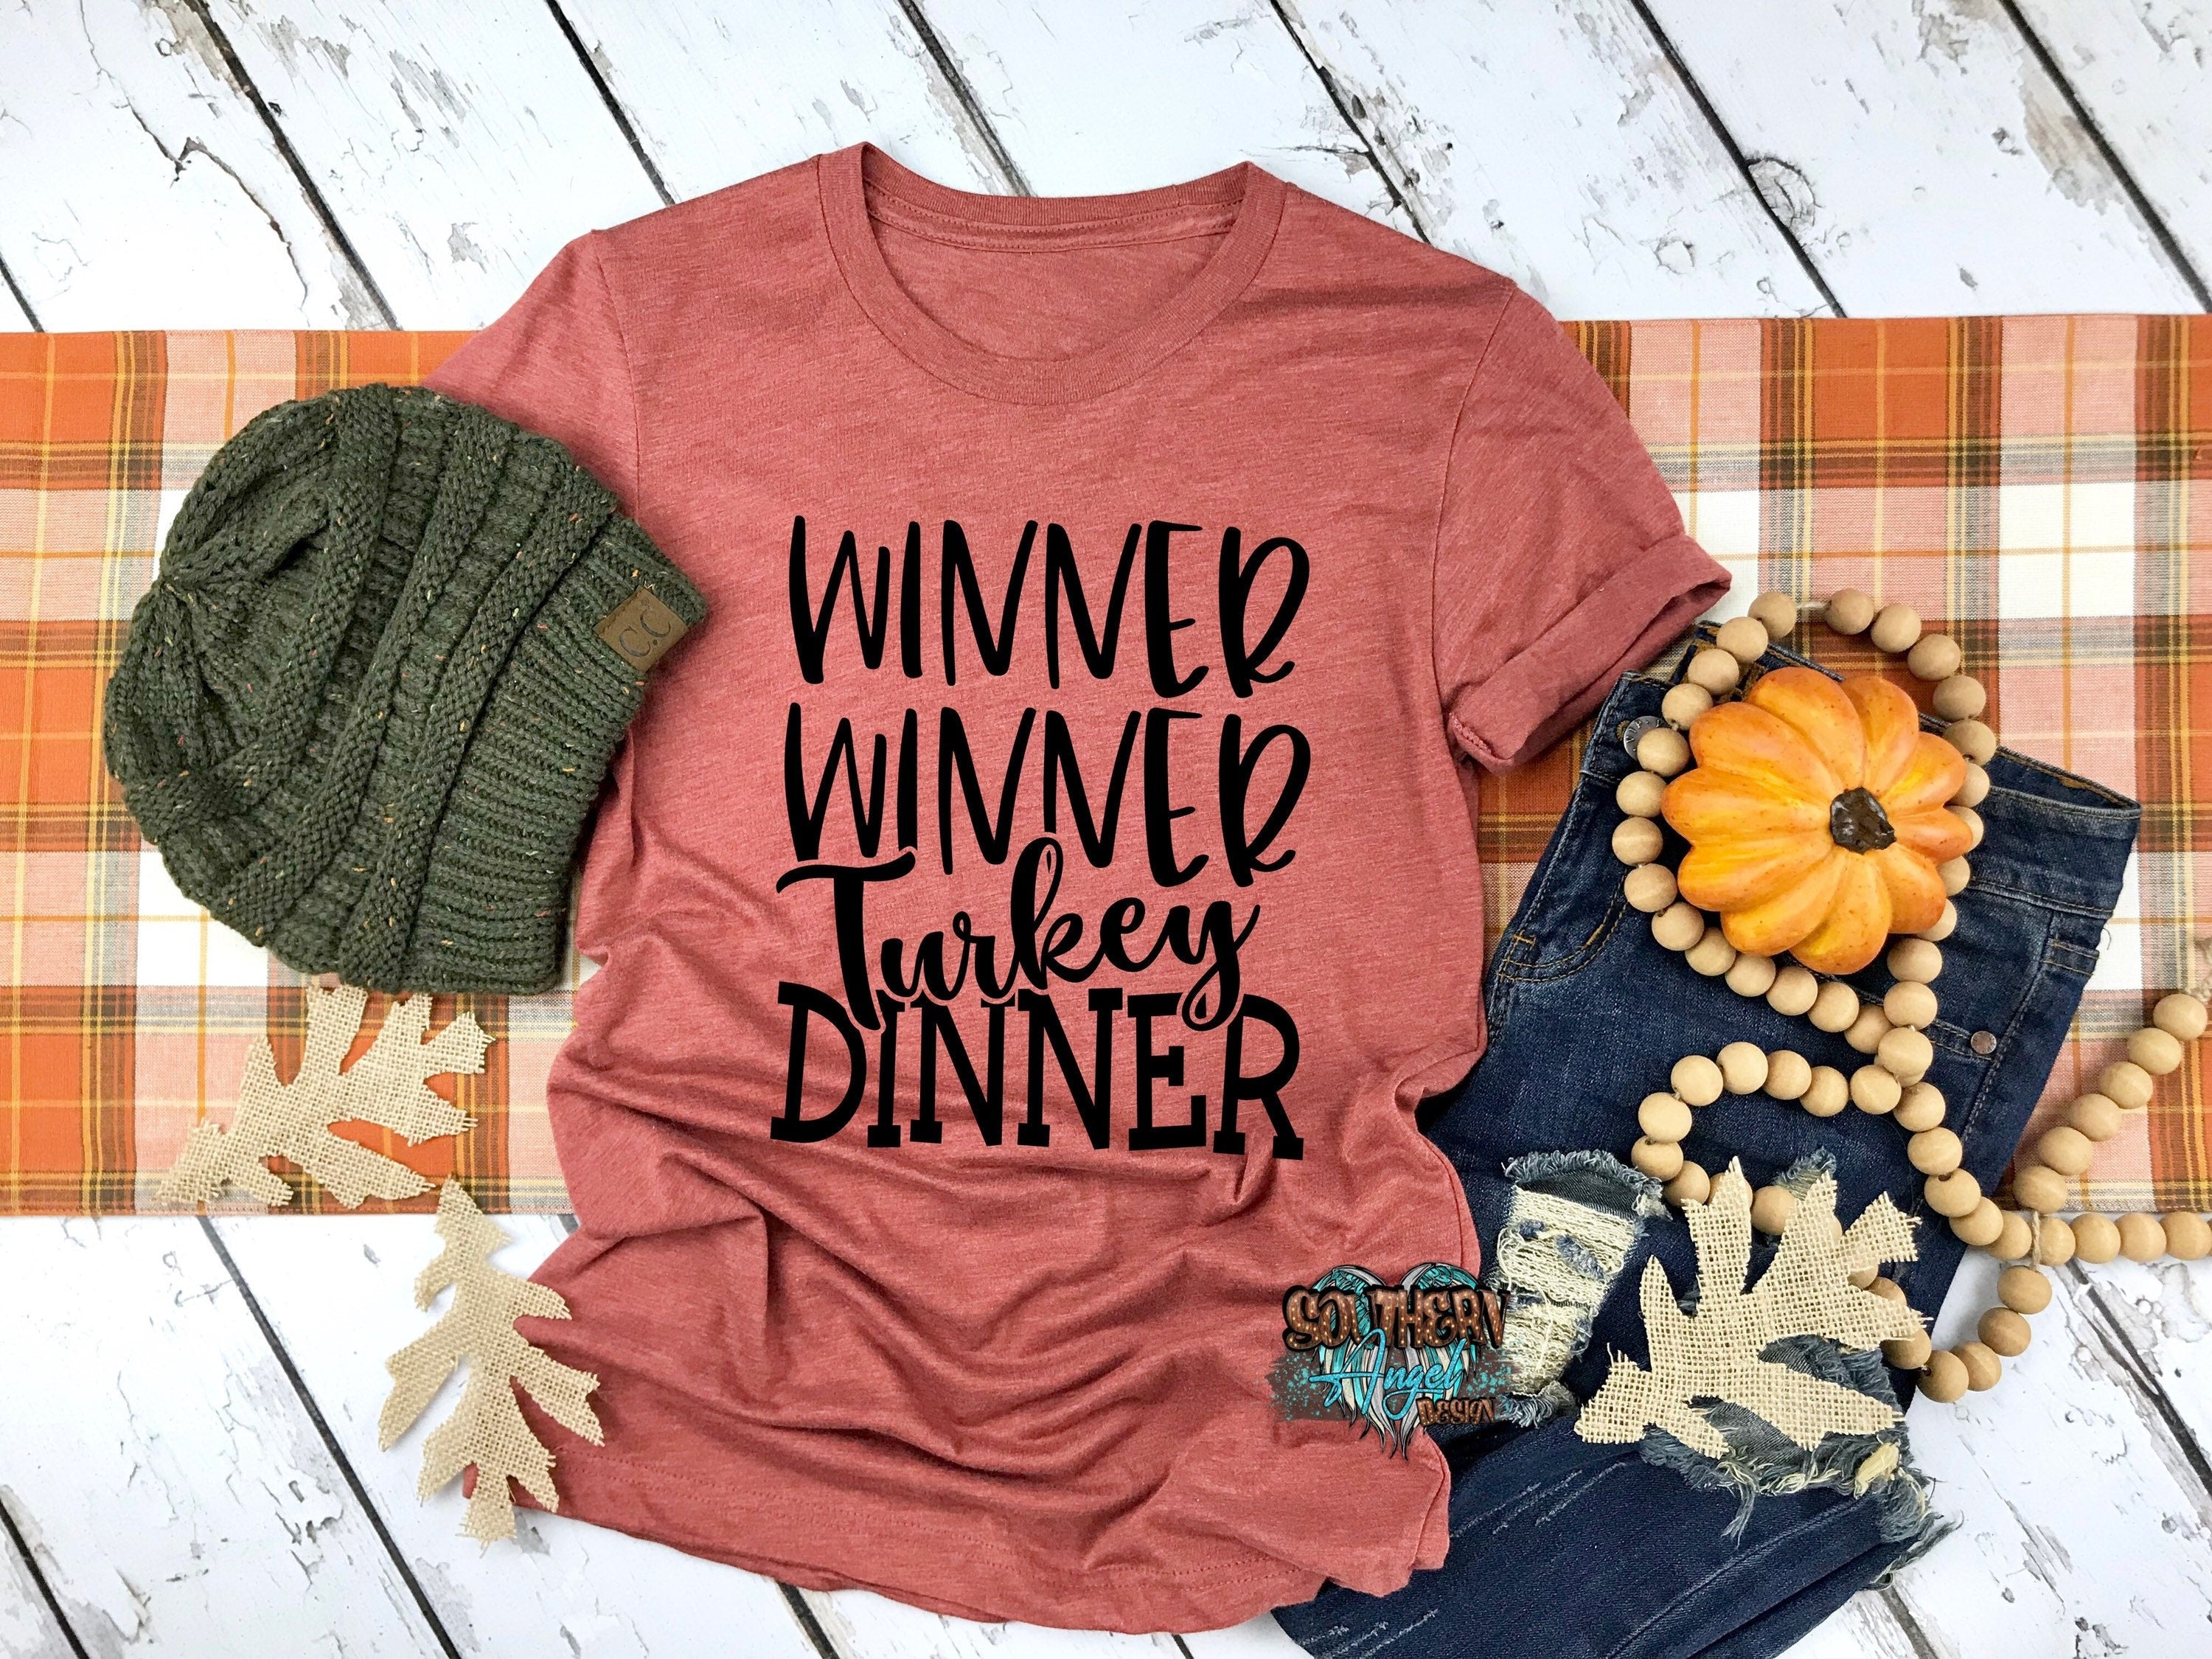 Winner Winner Turkey Dinner t-shirt